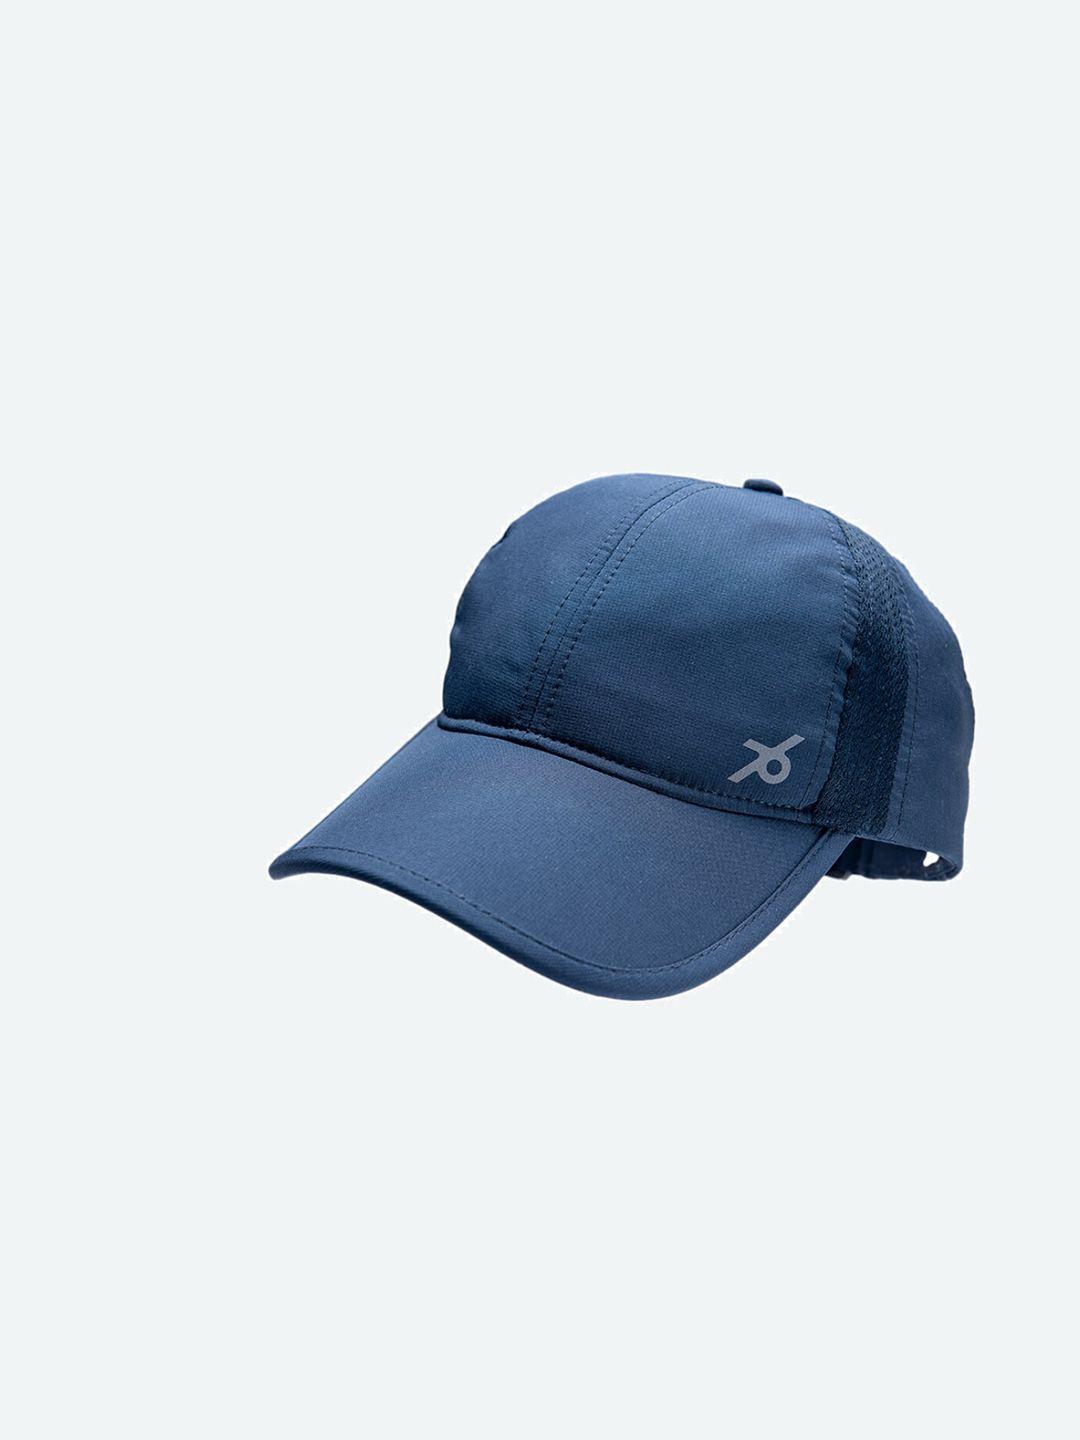 jockey-men-blue-baseball-cap